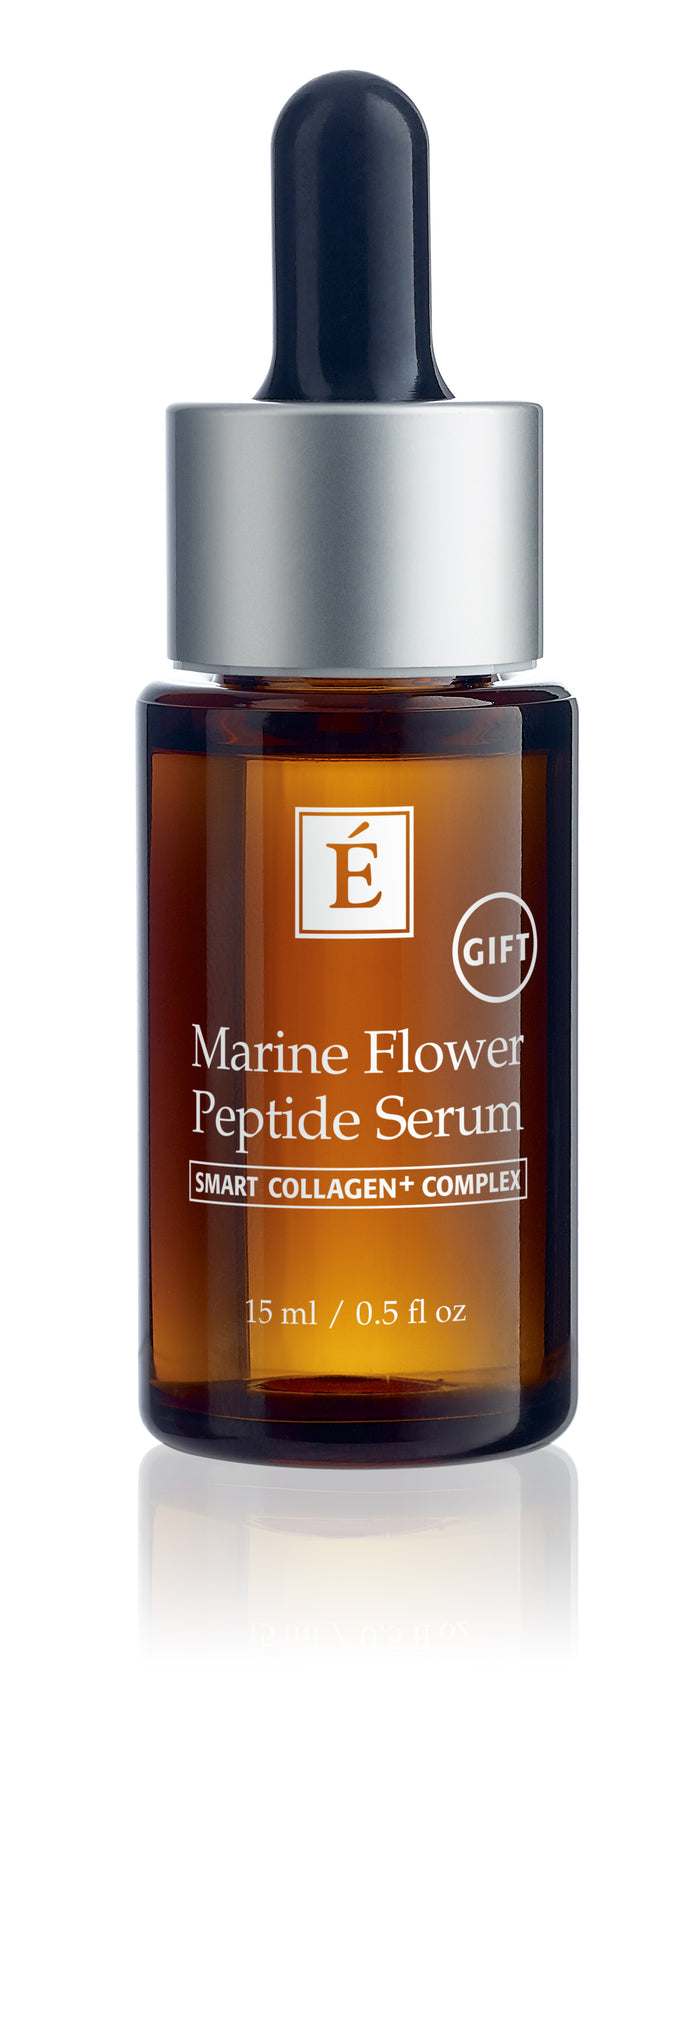 Marine Flower Peptide Serum Gift